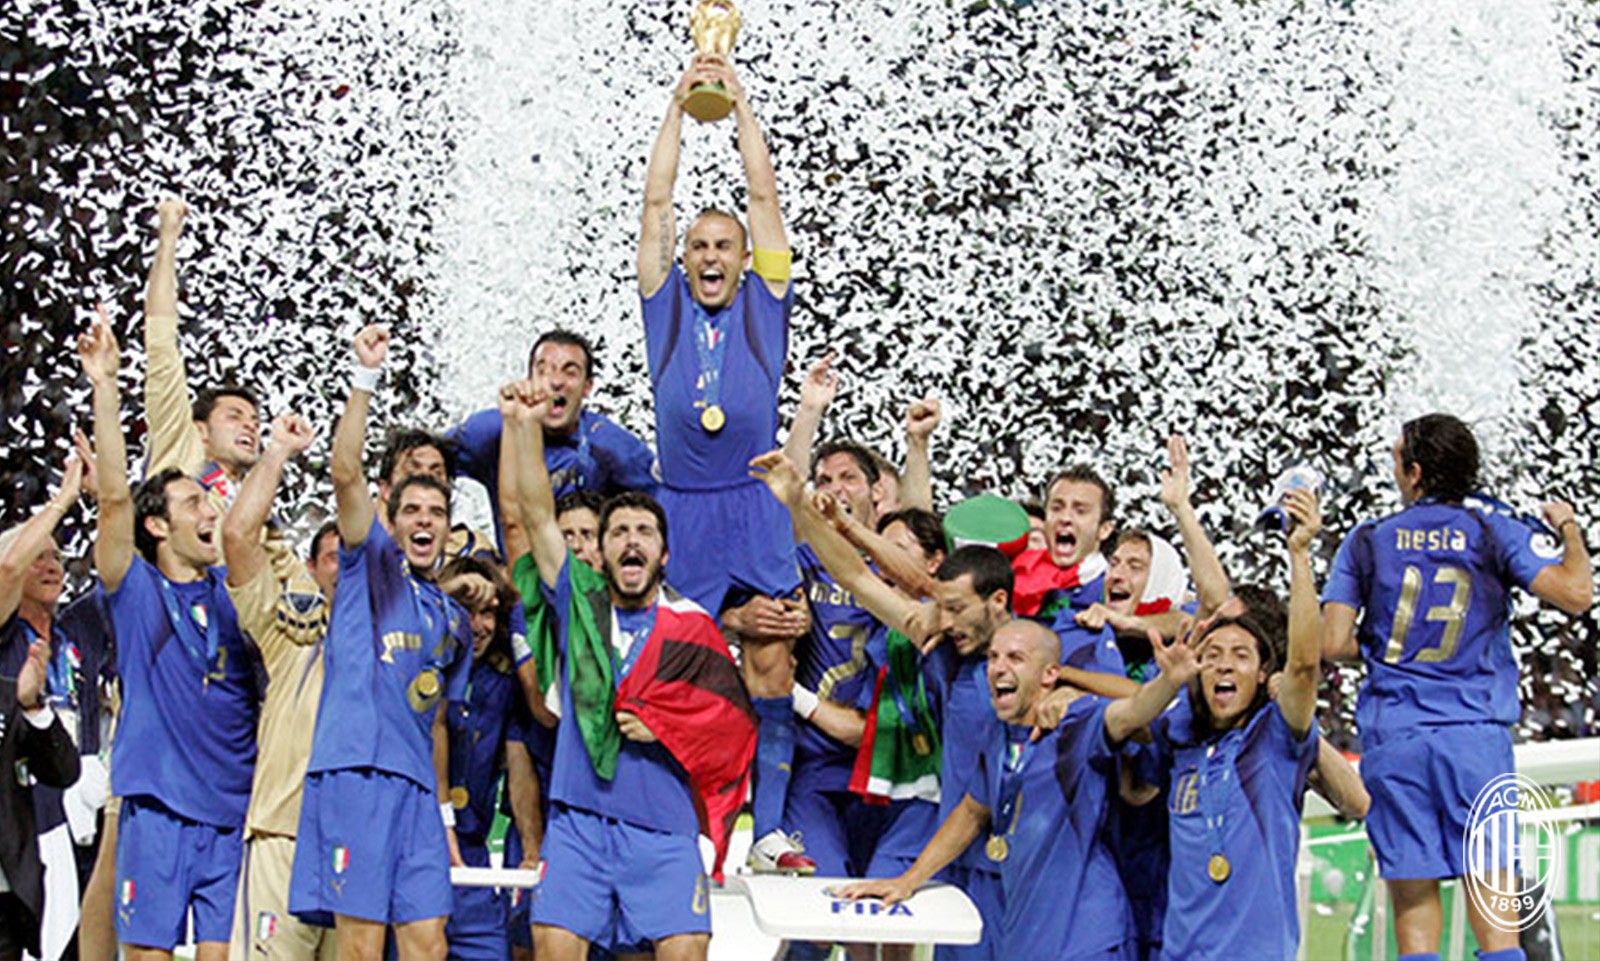 那一晚,超级皮波帮助蓝衣军团开启世界杯冠军之路